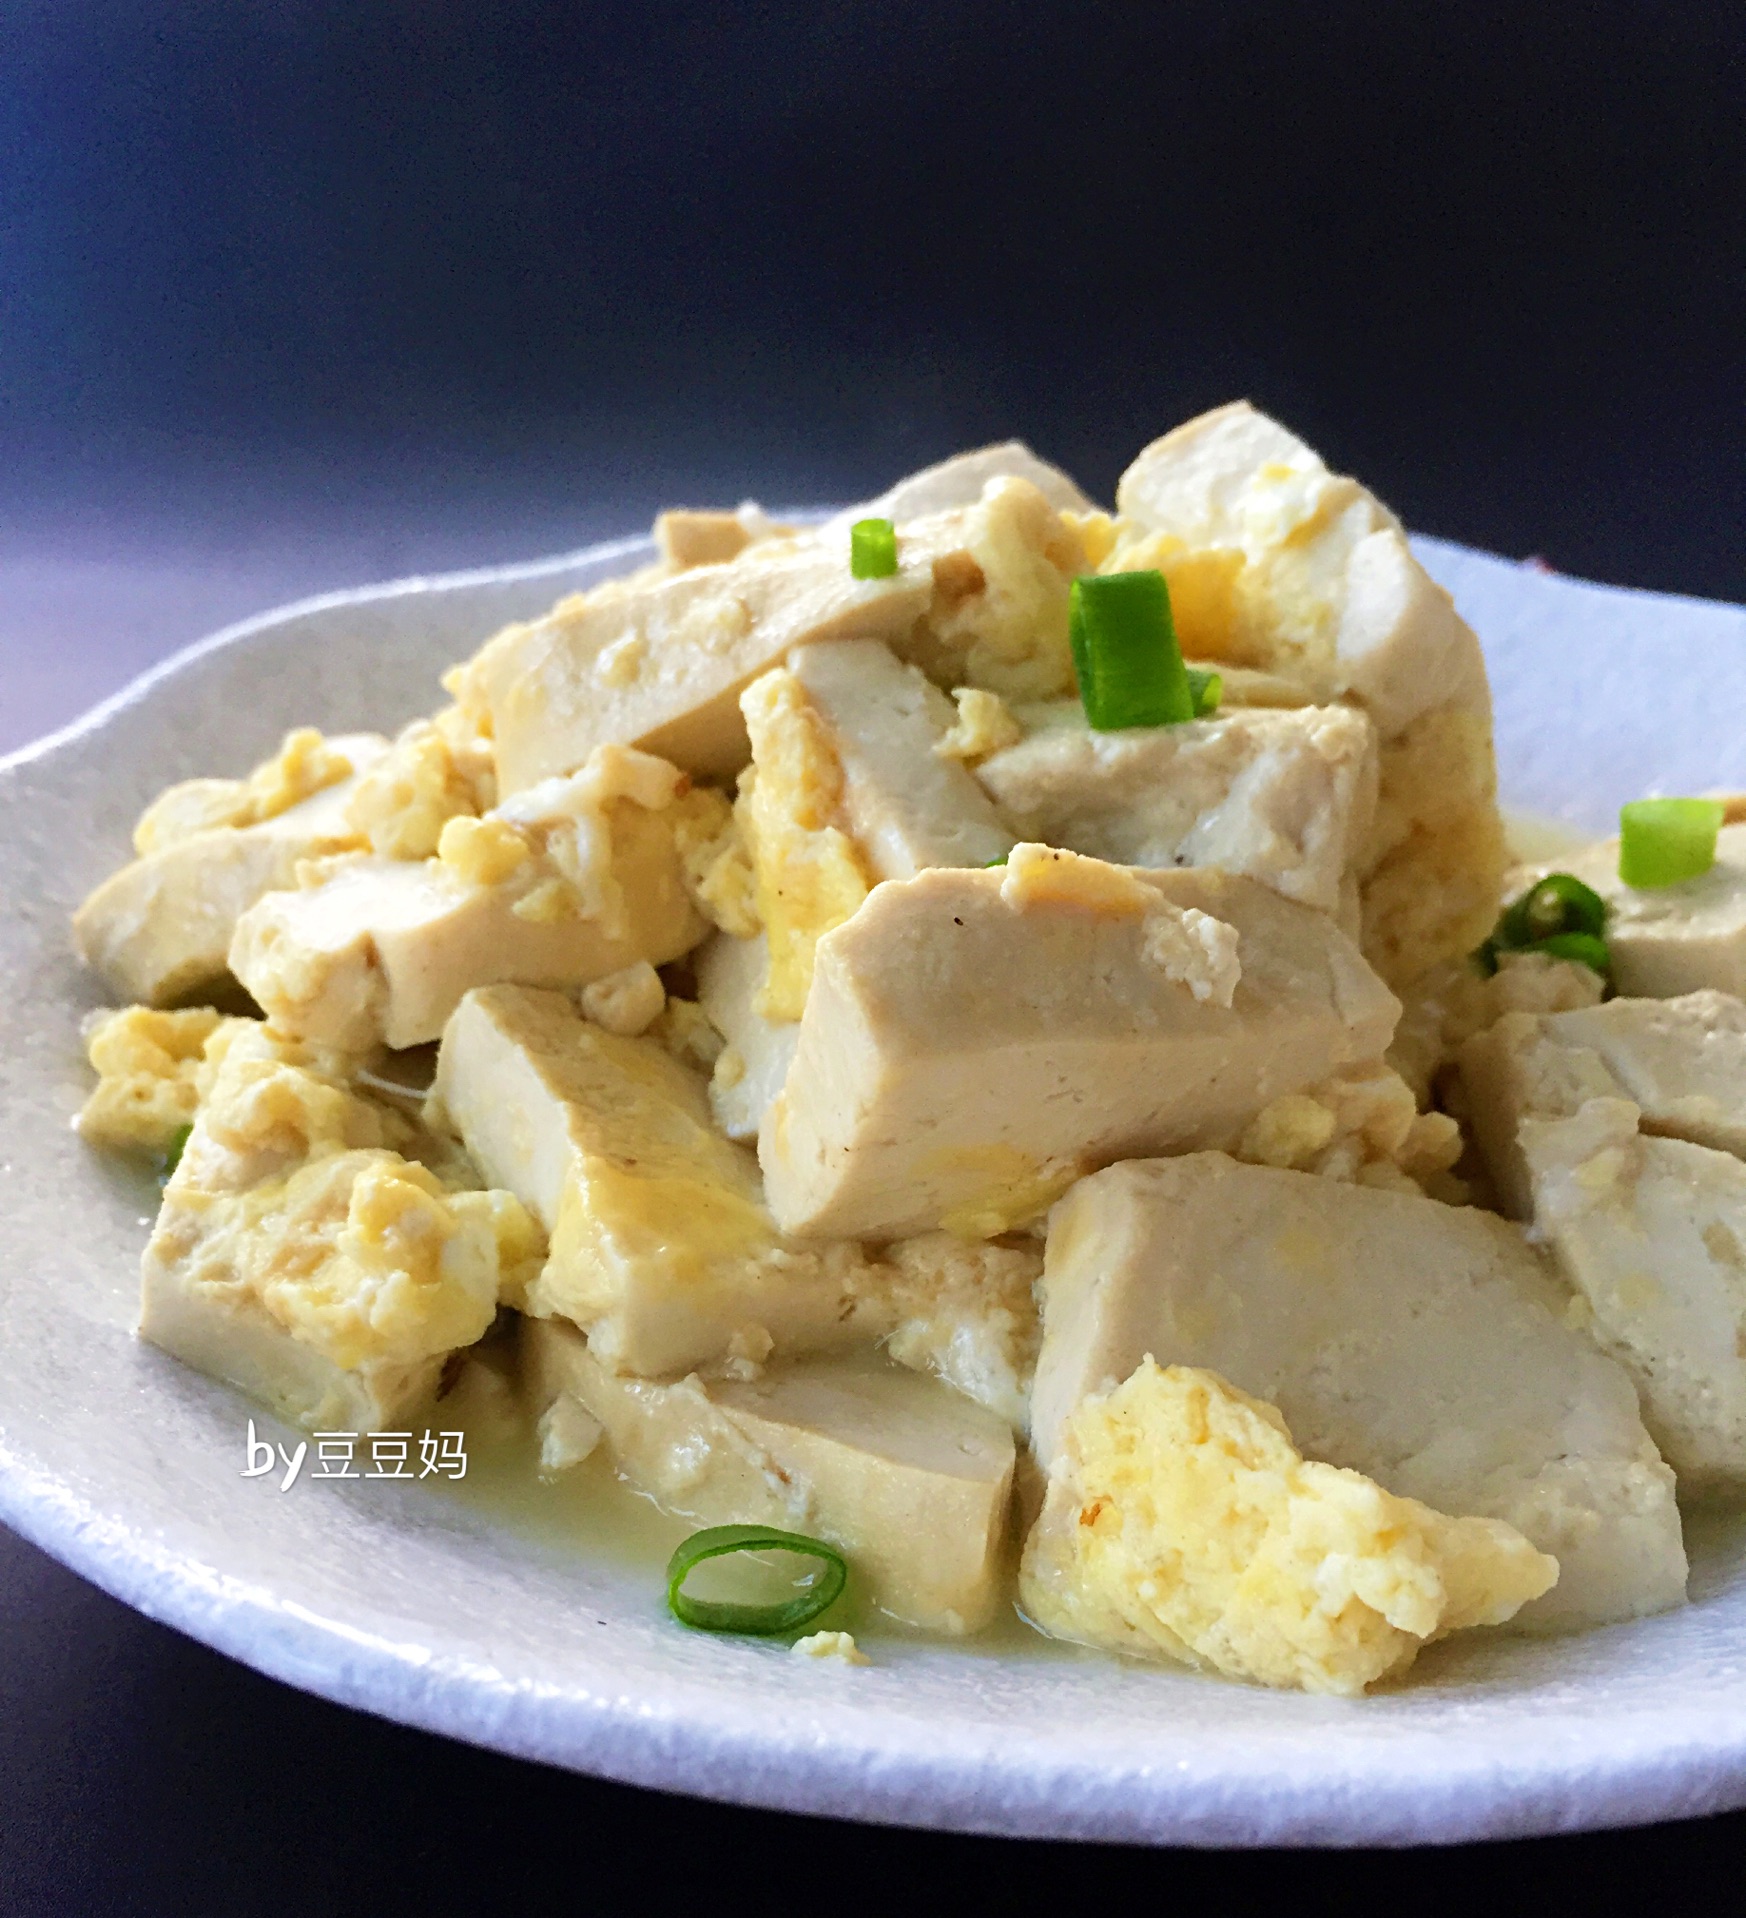 鸡蛋肉馅豆腐,鸡蛋肉馅豆腐的家常做法 - 美食杰鸡蛋肉馅豆腐做法大全